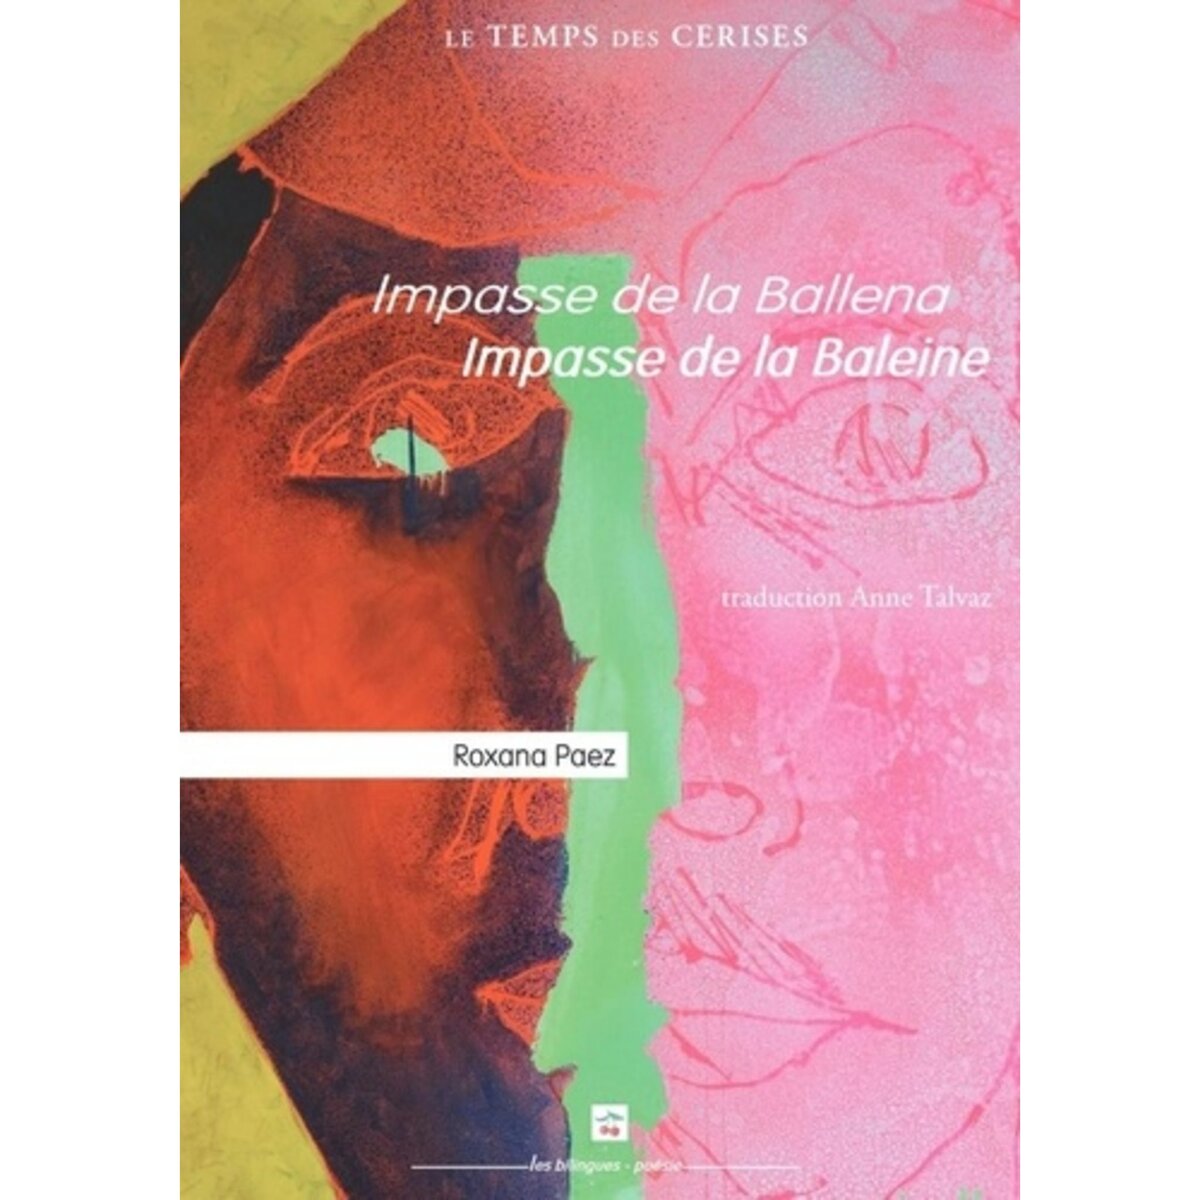  IMPASSE DE LA BALEINE. EDITION BILINGUE FRANCAIS-ESPAGNOL, Paez Roxana